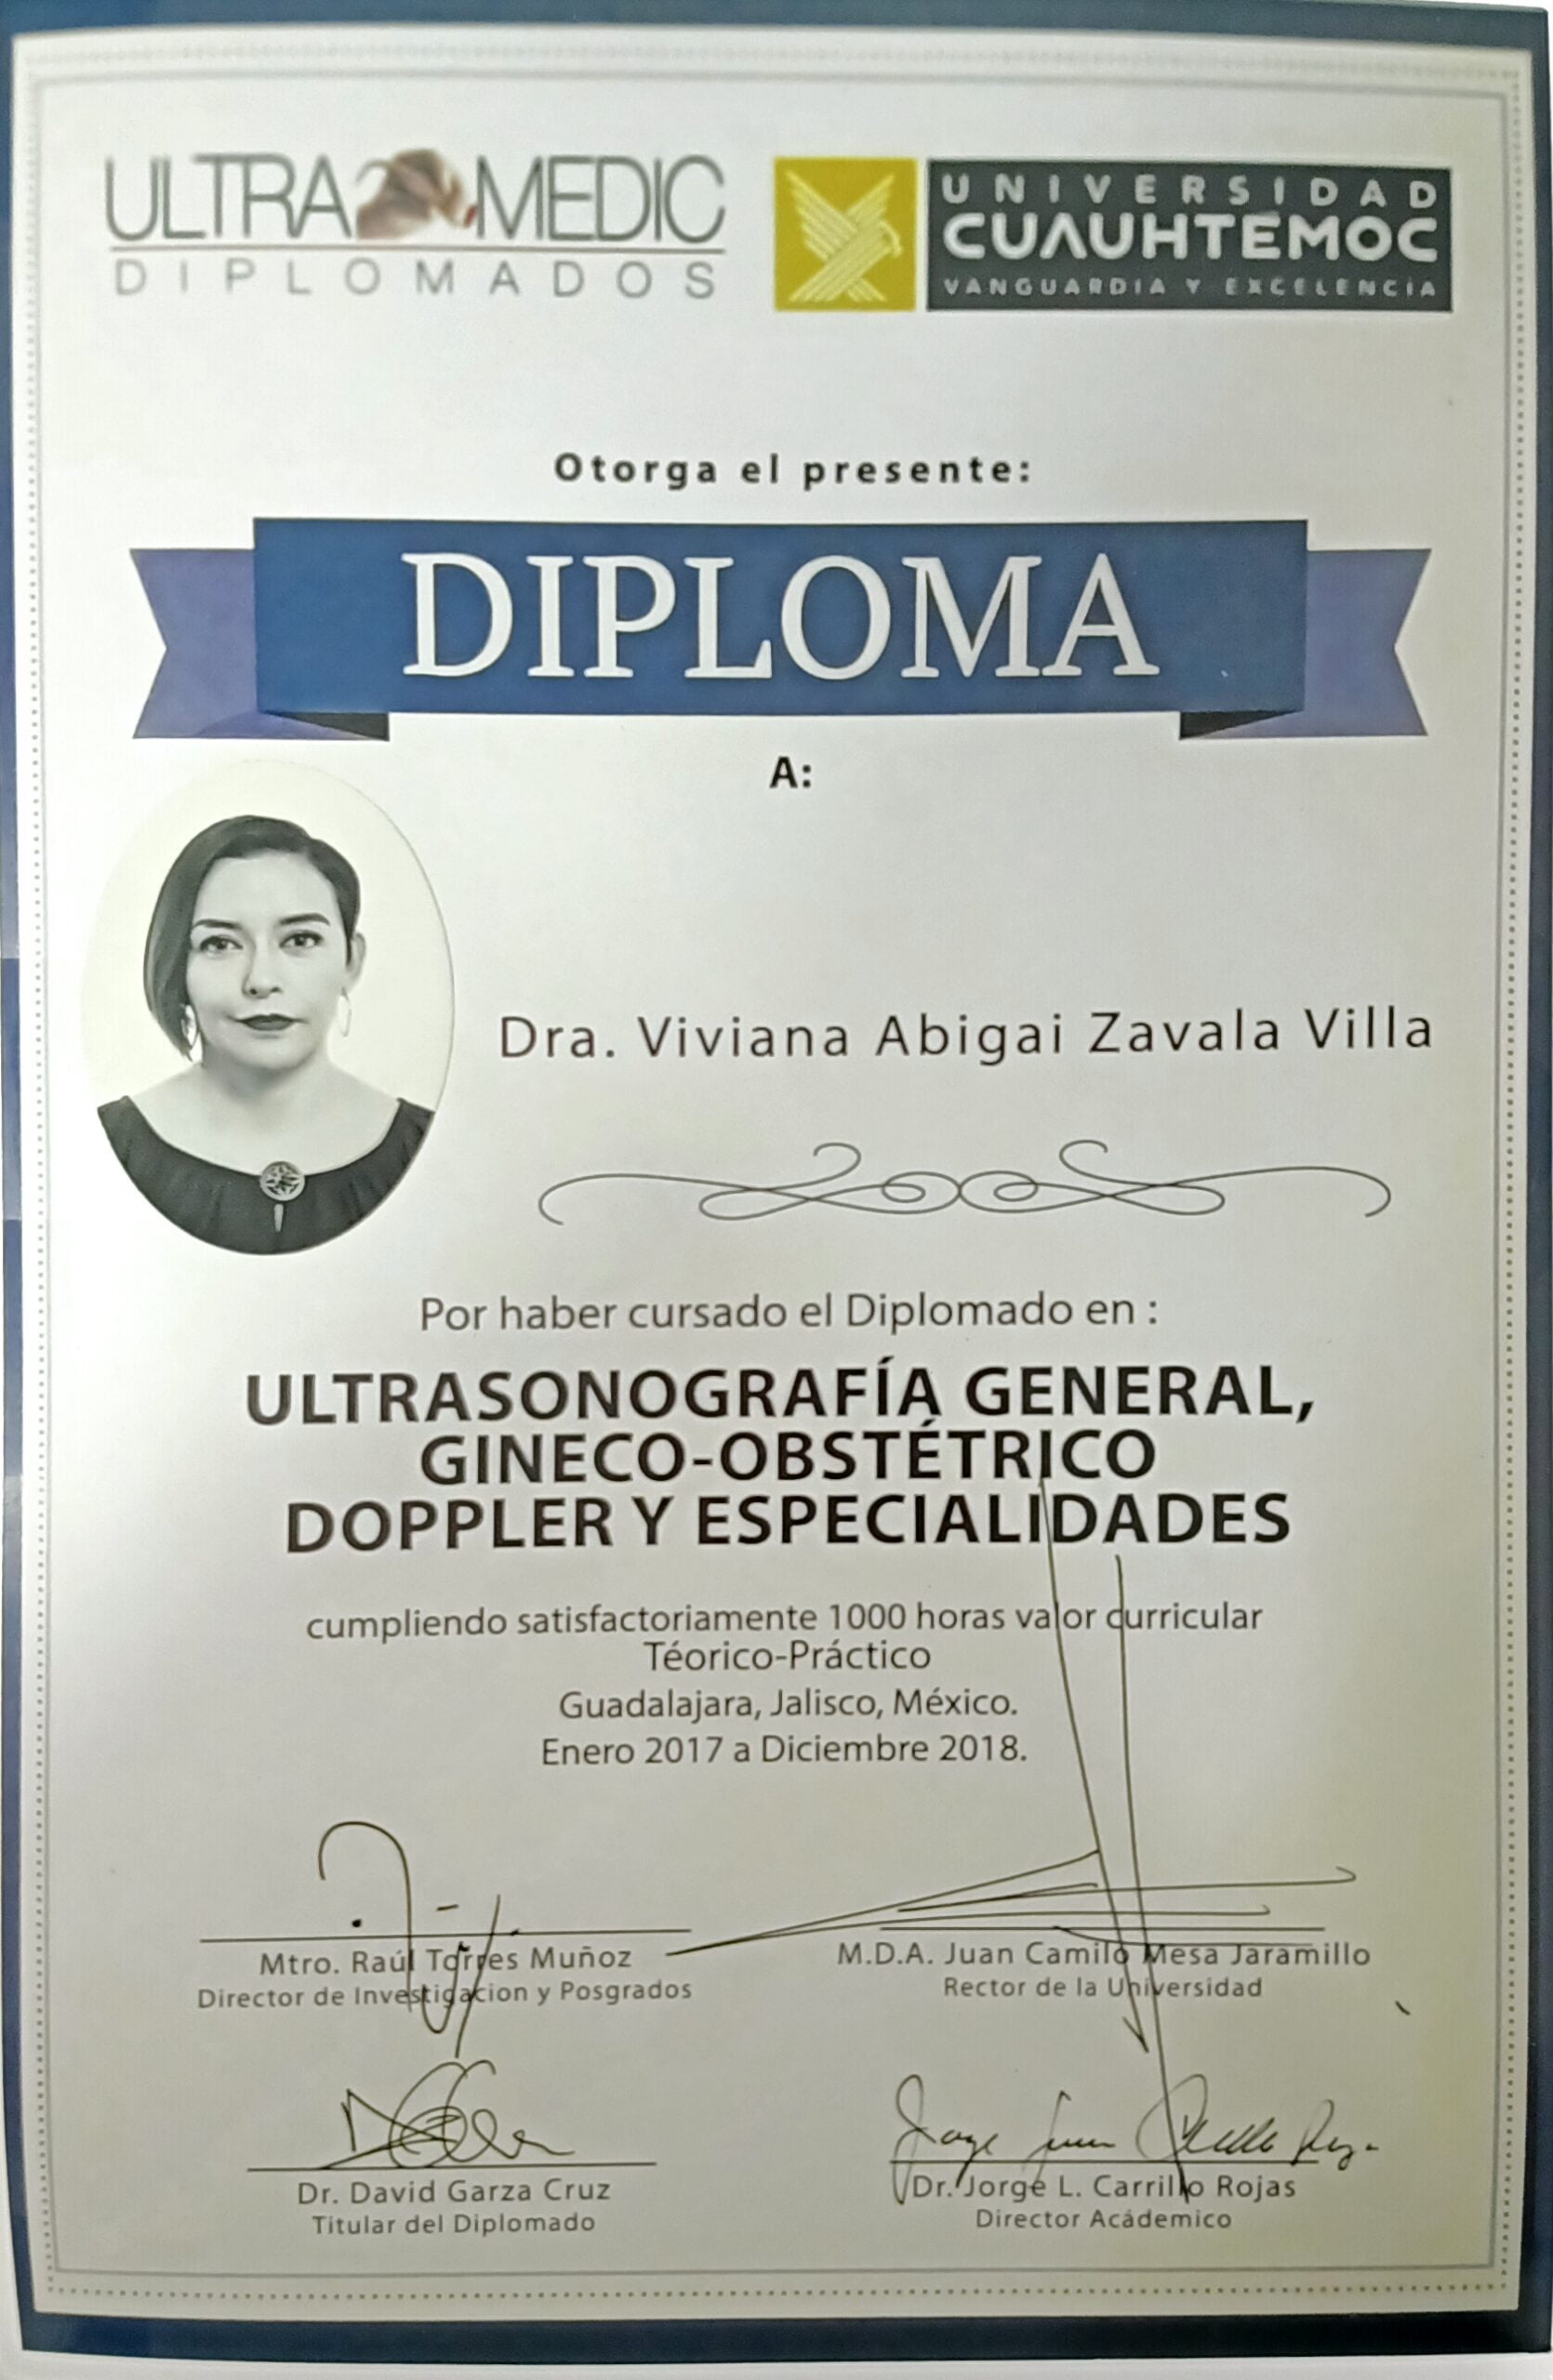 diplomas iknelia medic